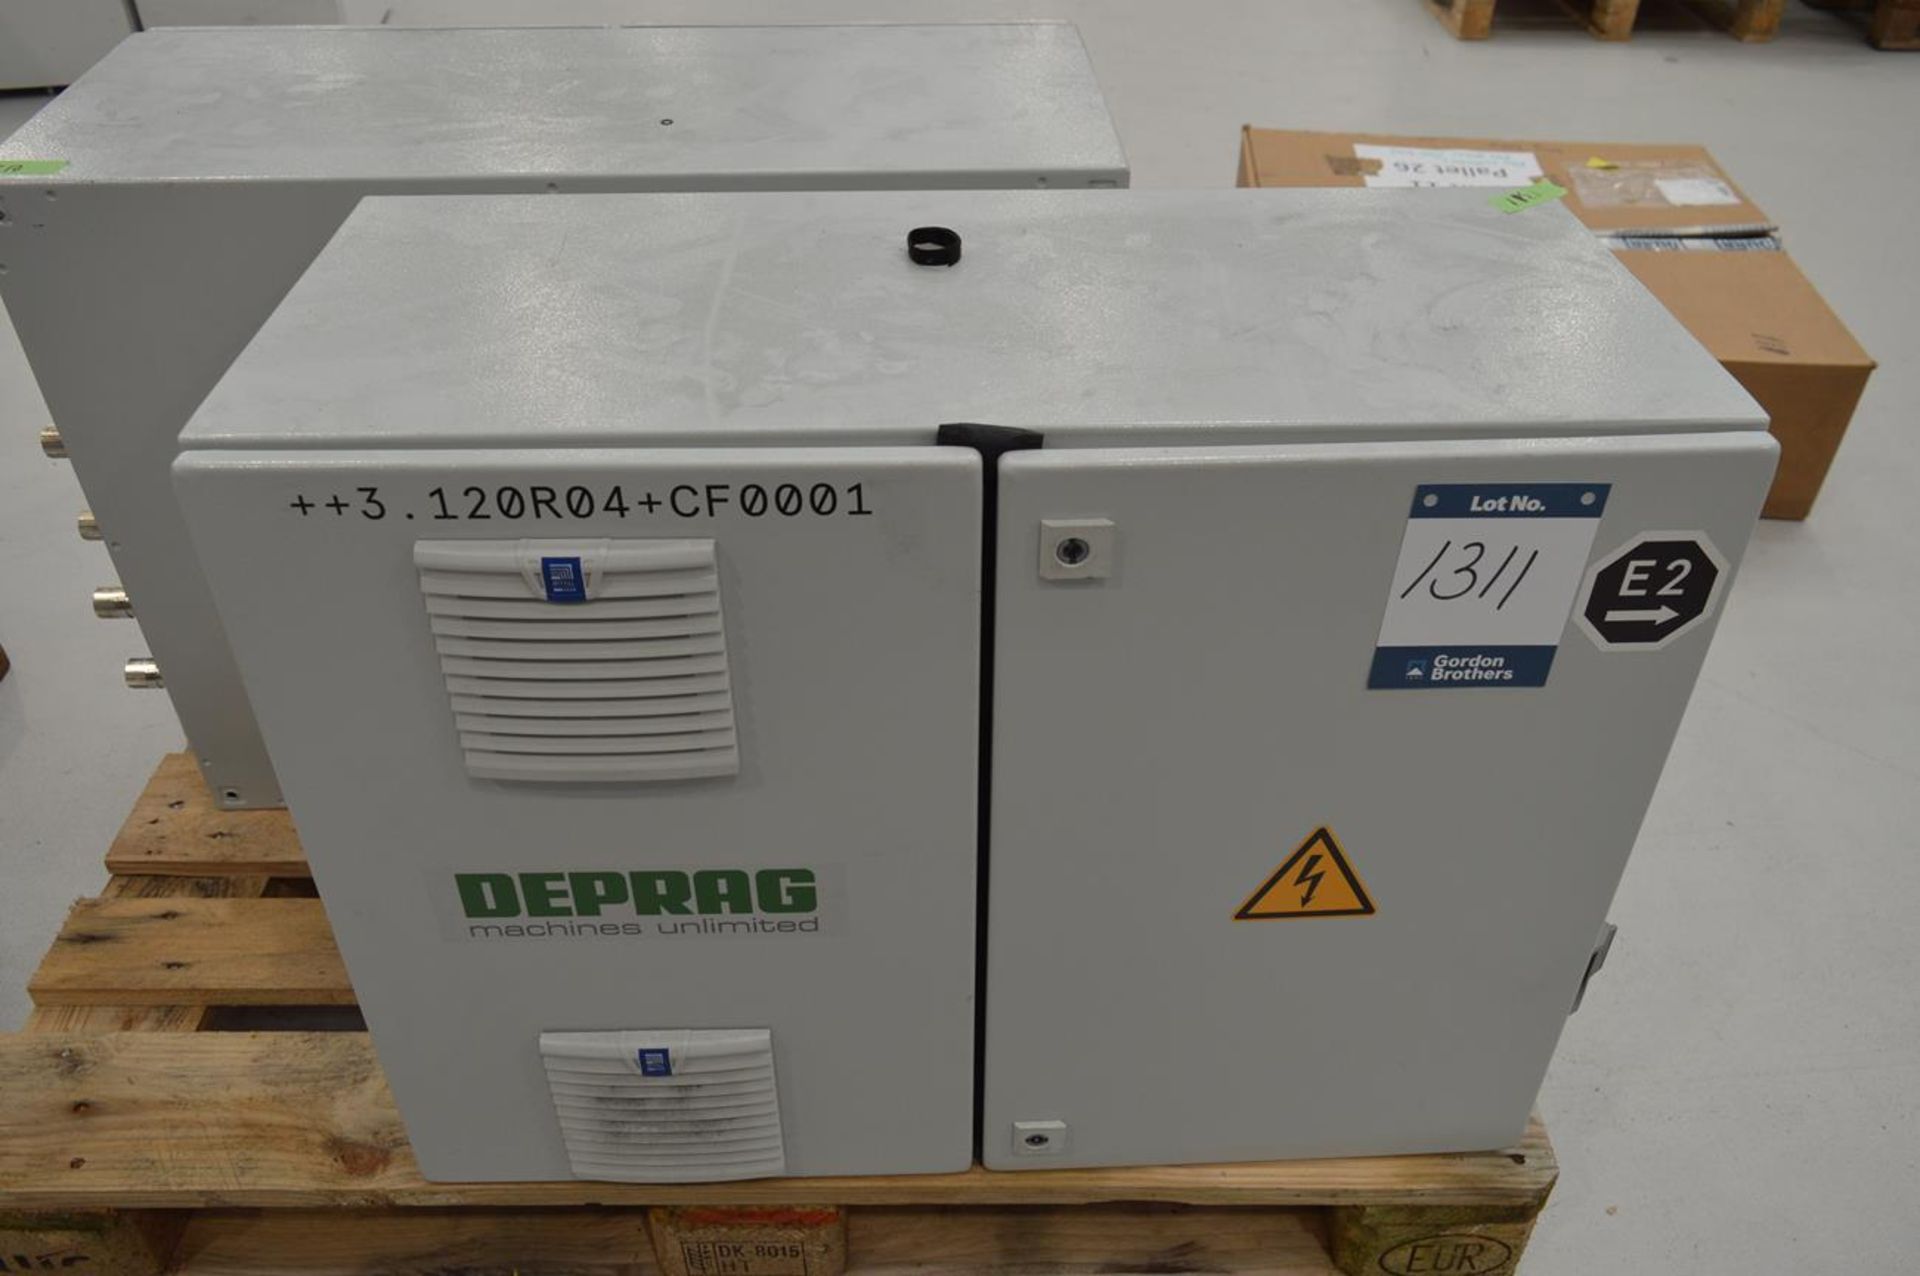 Deprag, ADFS-2-1508-1-0 controller, Serial No. 1410221/21